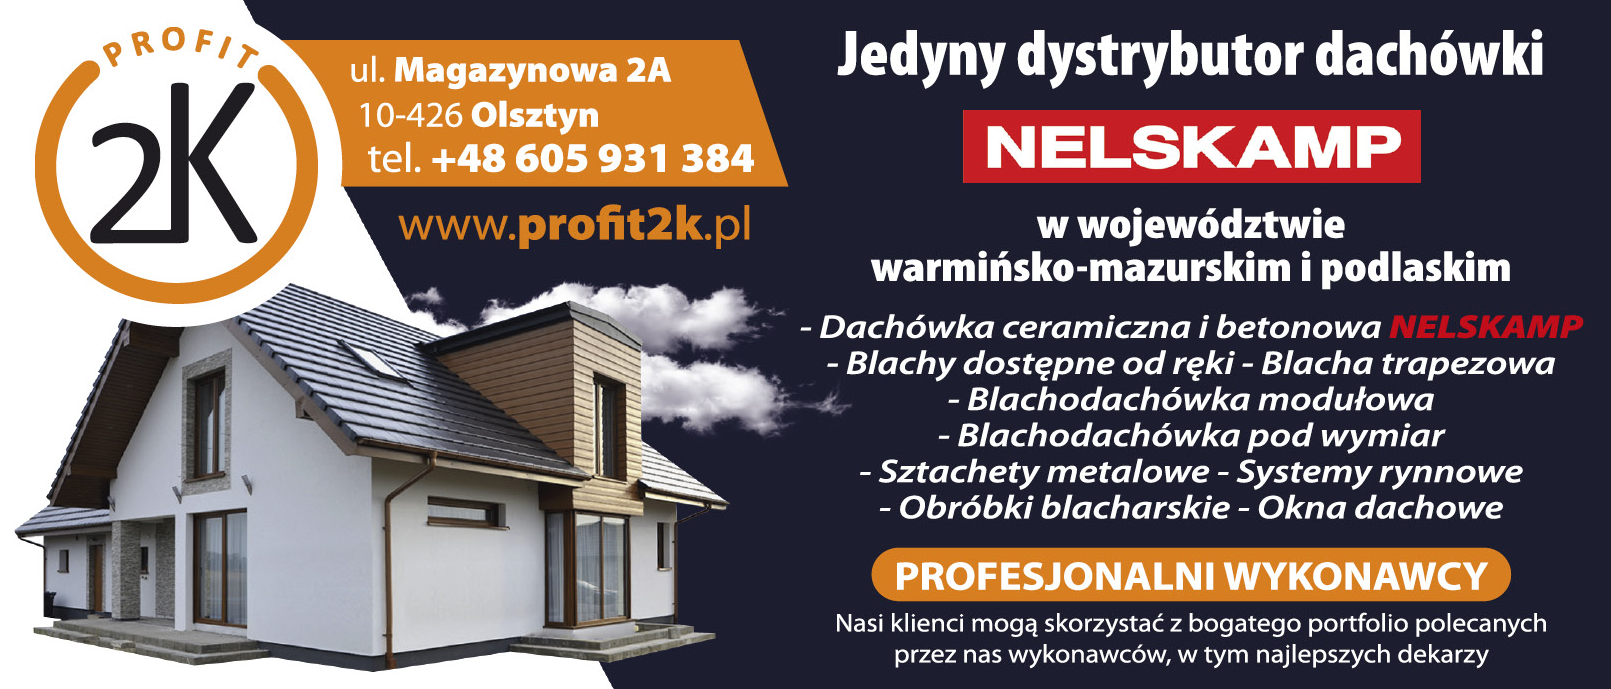 Profit 2K Olsztyn Dachówka Ceramiczna i Betonowa NELSKAMP / Sztachety Metalowe / Obróbki Blacharskie